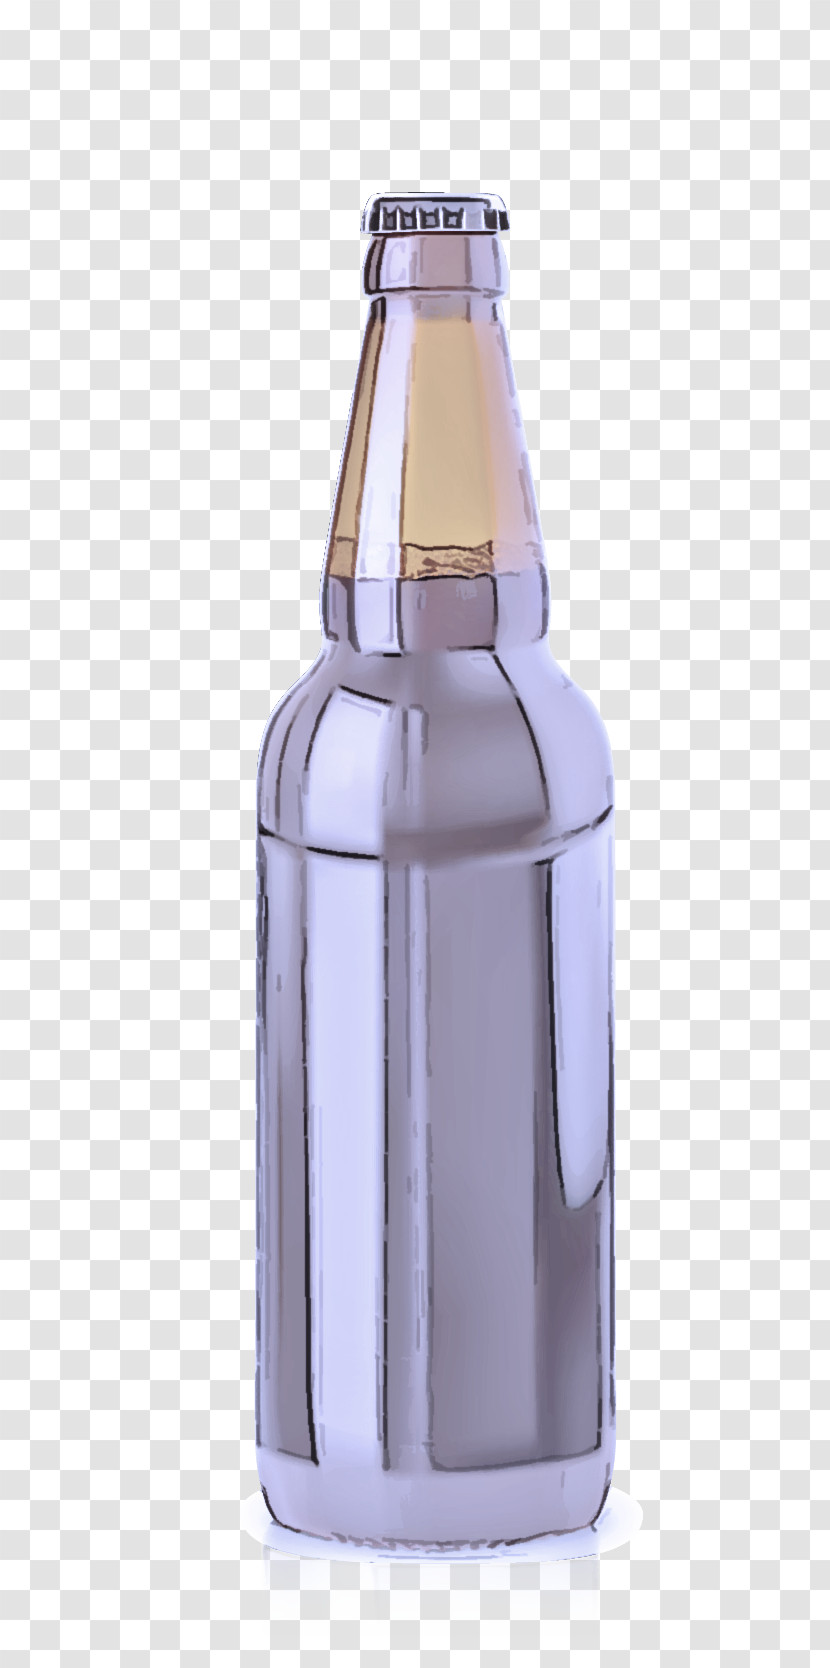 Glass Bottle Beer Bottle Glass Bottle Purple Transparent PNG